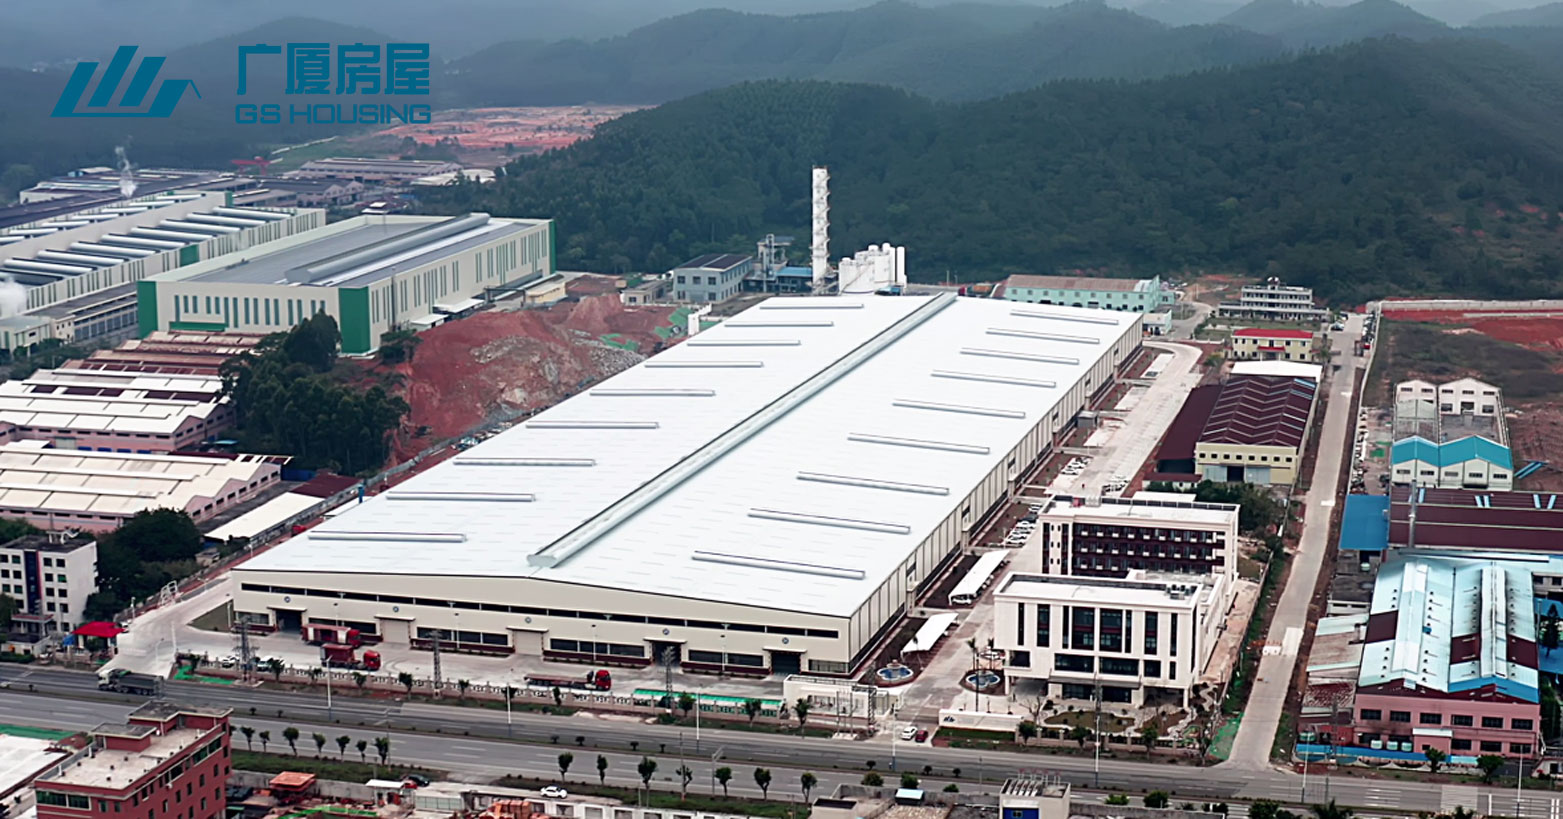 GS Housing - производствена база во Гуангдонг на југот на Кина (повеќе од 100 комплети контејнерска куќа може да се завршат за еден ден)